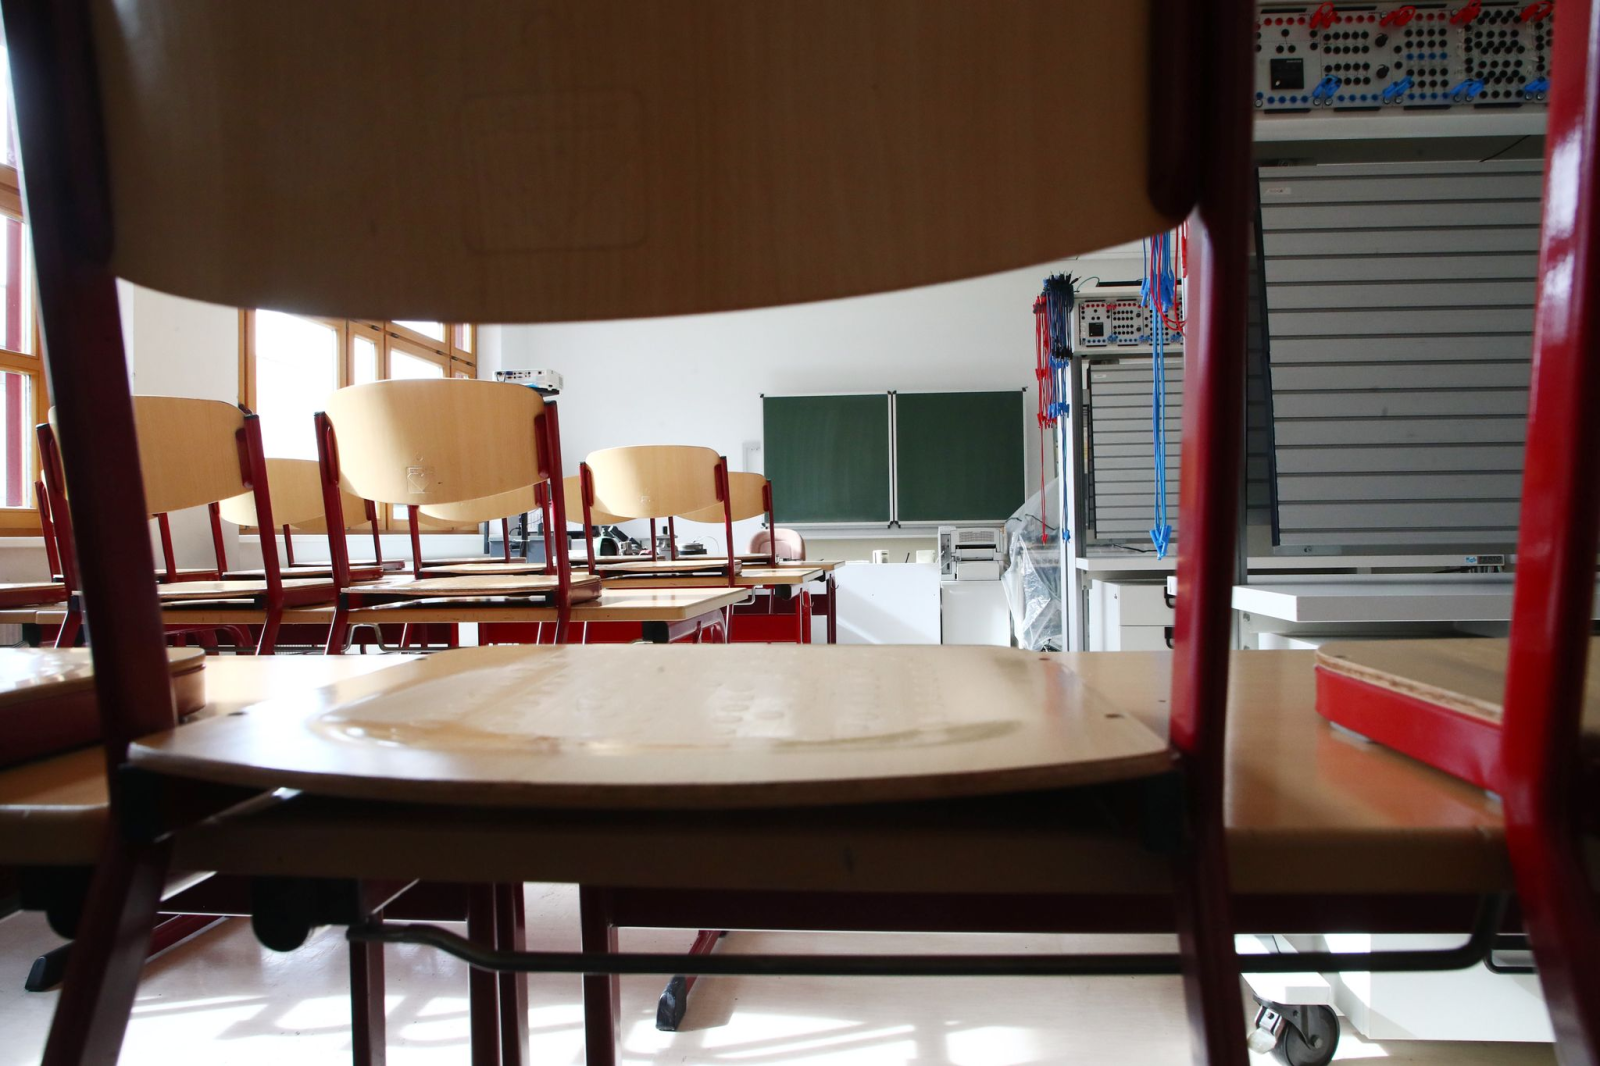 Stühle stehen in einem leeren Klassenzimmer auf den Tischen.